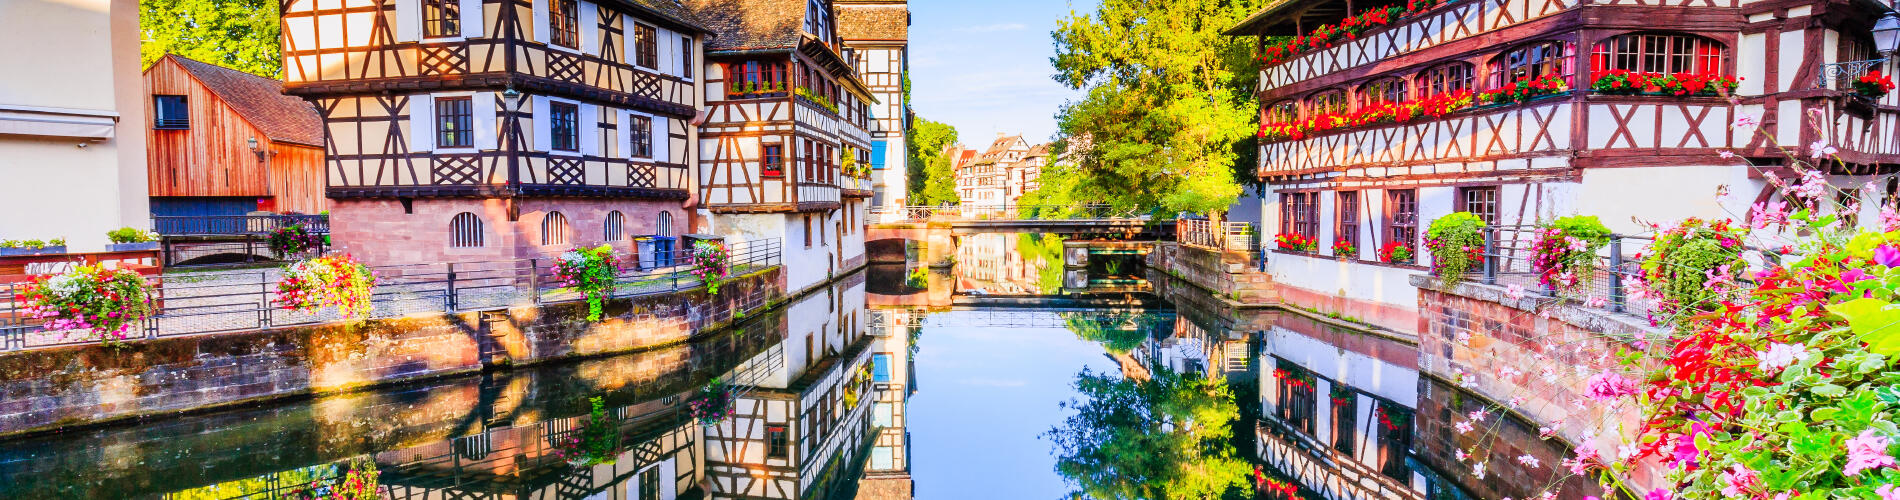 Страсбург, Франция, Европа